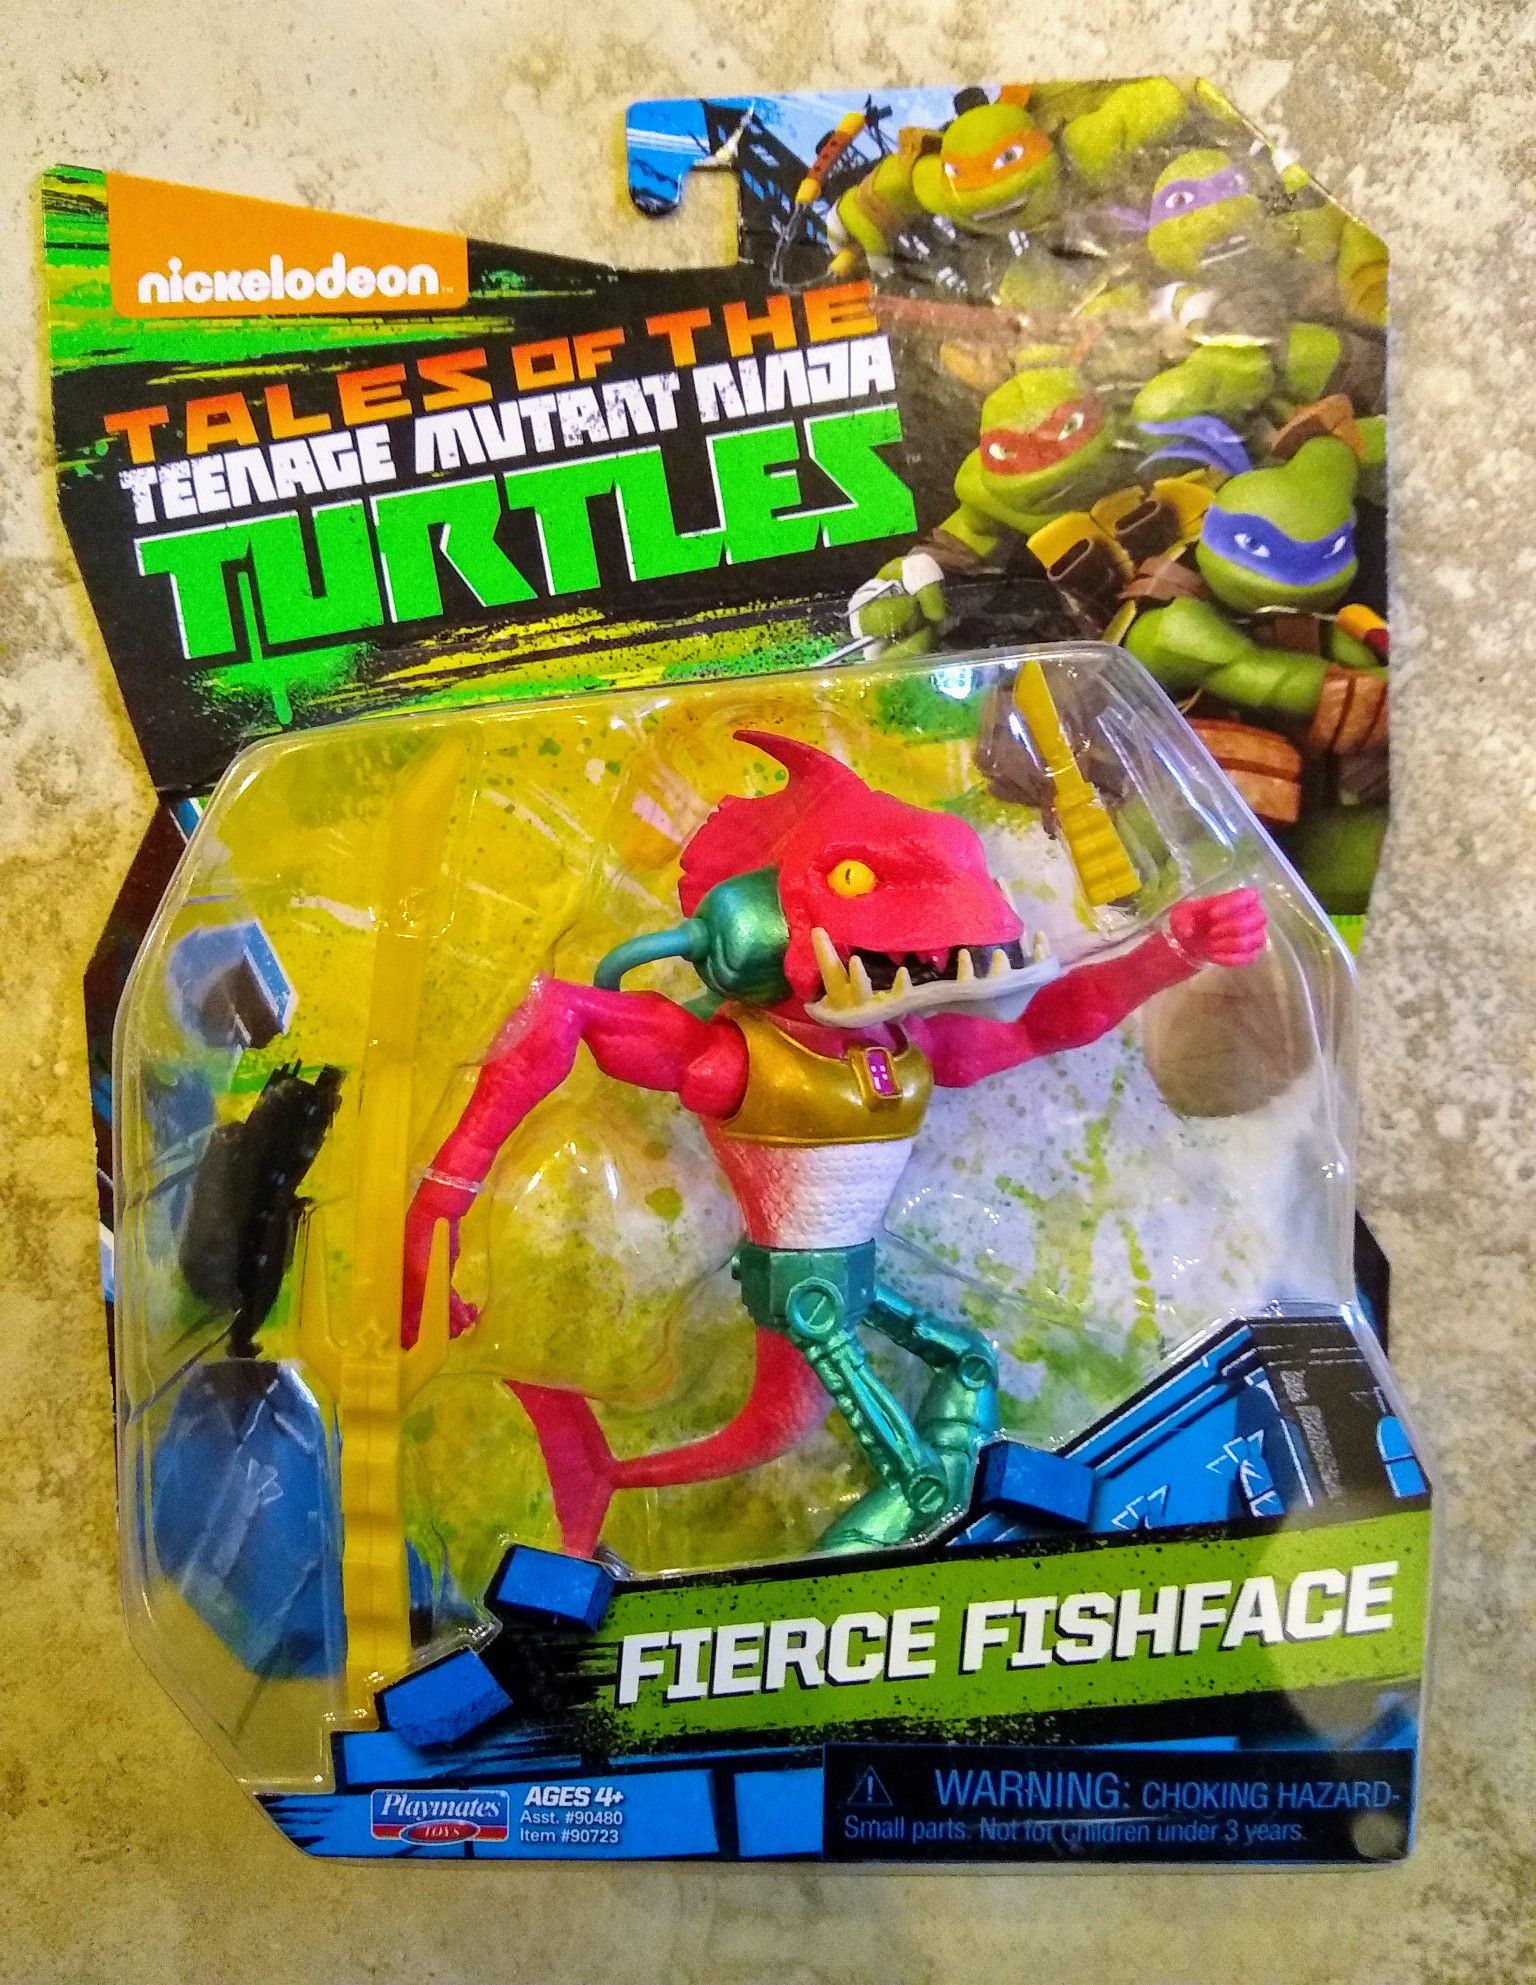 Tales of the Teenage Mutant Ninja Turtles Fishface